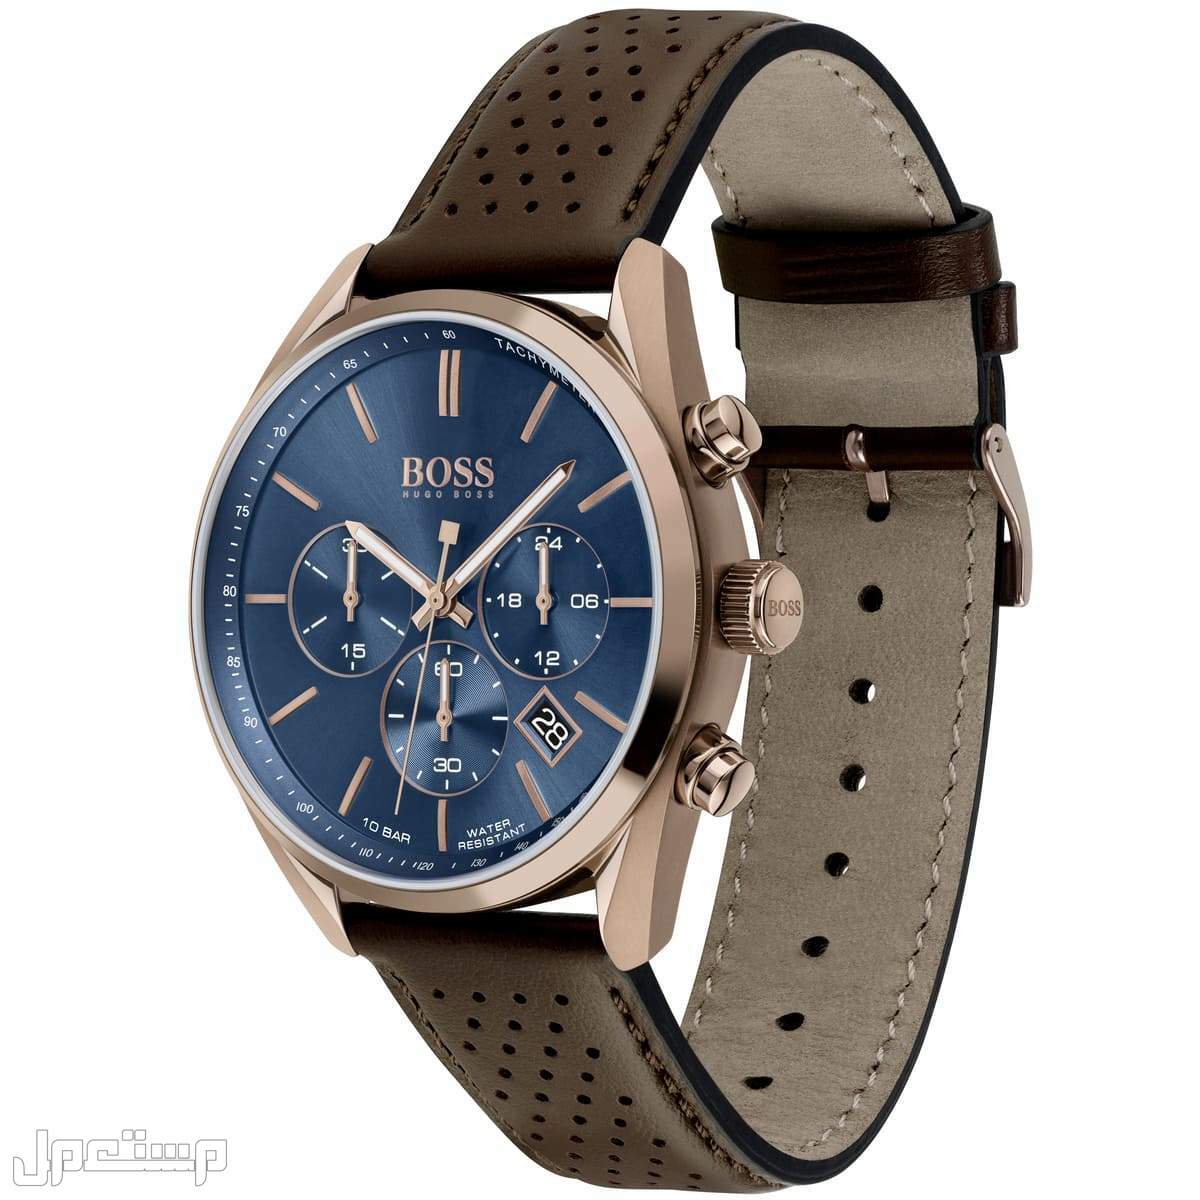 أفضل ساعات بوس Boss الأكثر مبيعا هذا العام وأسعارها في العراق ساع 1513817-hugo-boss-watch-men-blue-dial-leather-brown-strap-quartz-analog-chro